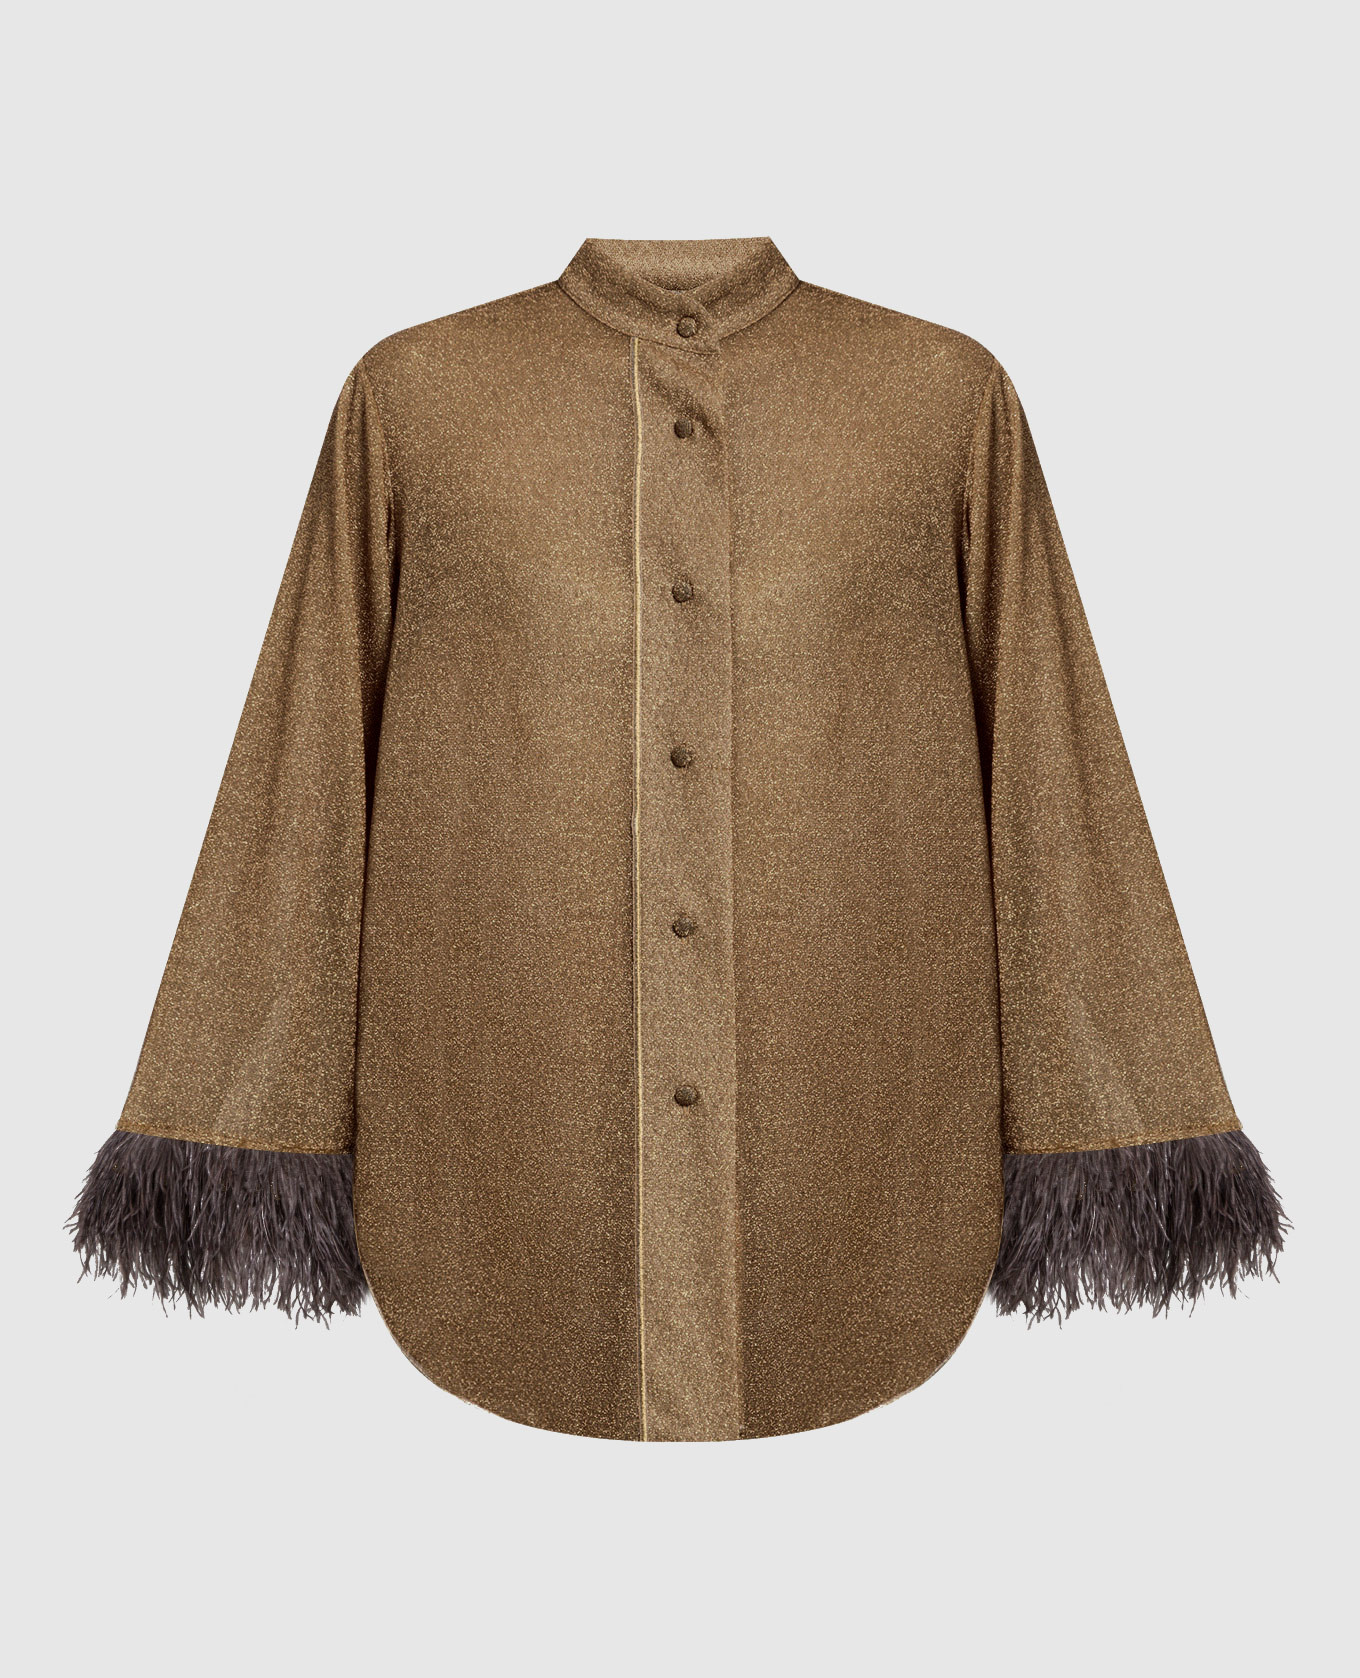 Оливковая блуза HS22 Lumiere Plumage со страусиными перьями